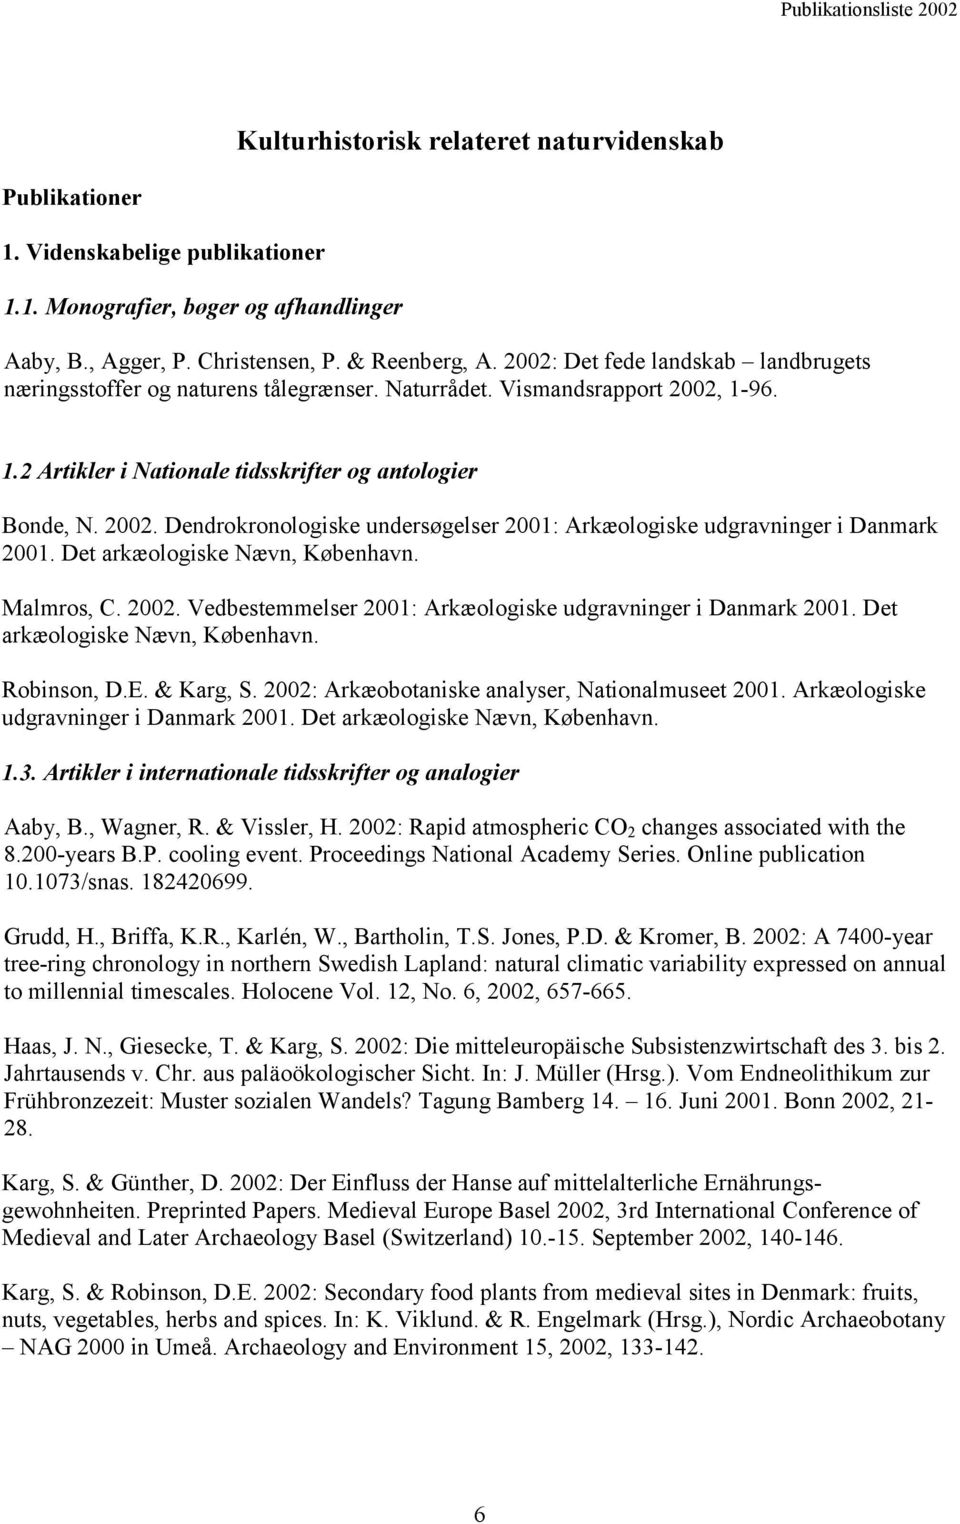 Det arkæologiske Nævn, København. Malmros, C. 2002. Vedbestemmelser 2001: Arkæologiske udgravninger i Danmark 2001. Det arkæologiske Nævn, København. Robinson, D.E. & Karg, S.